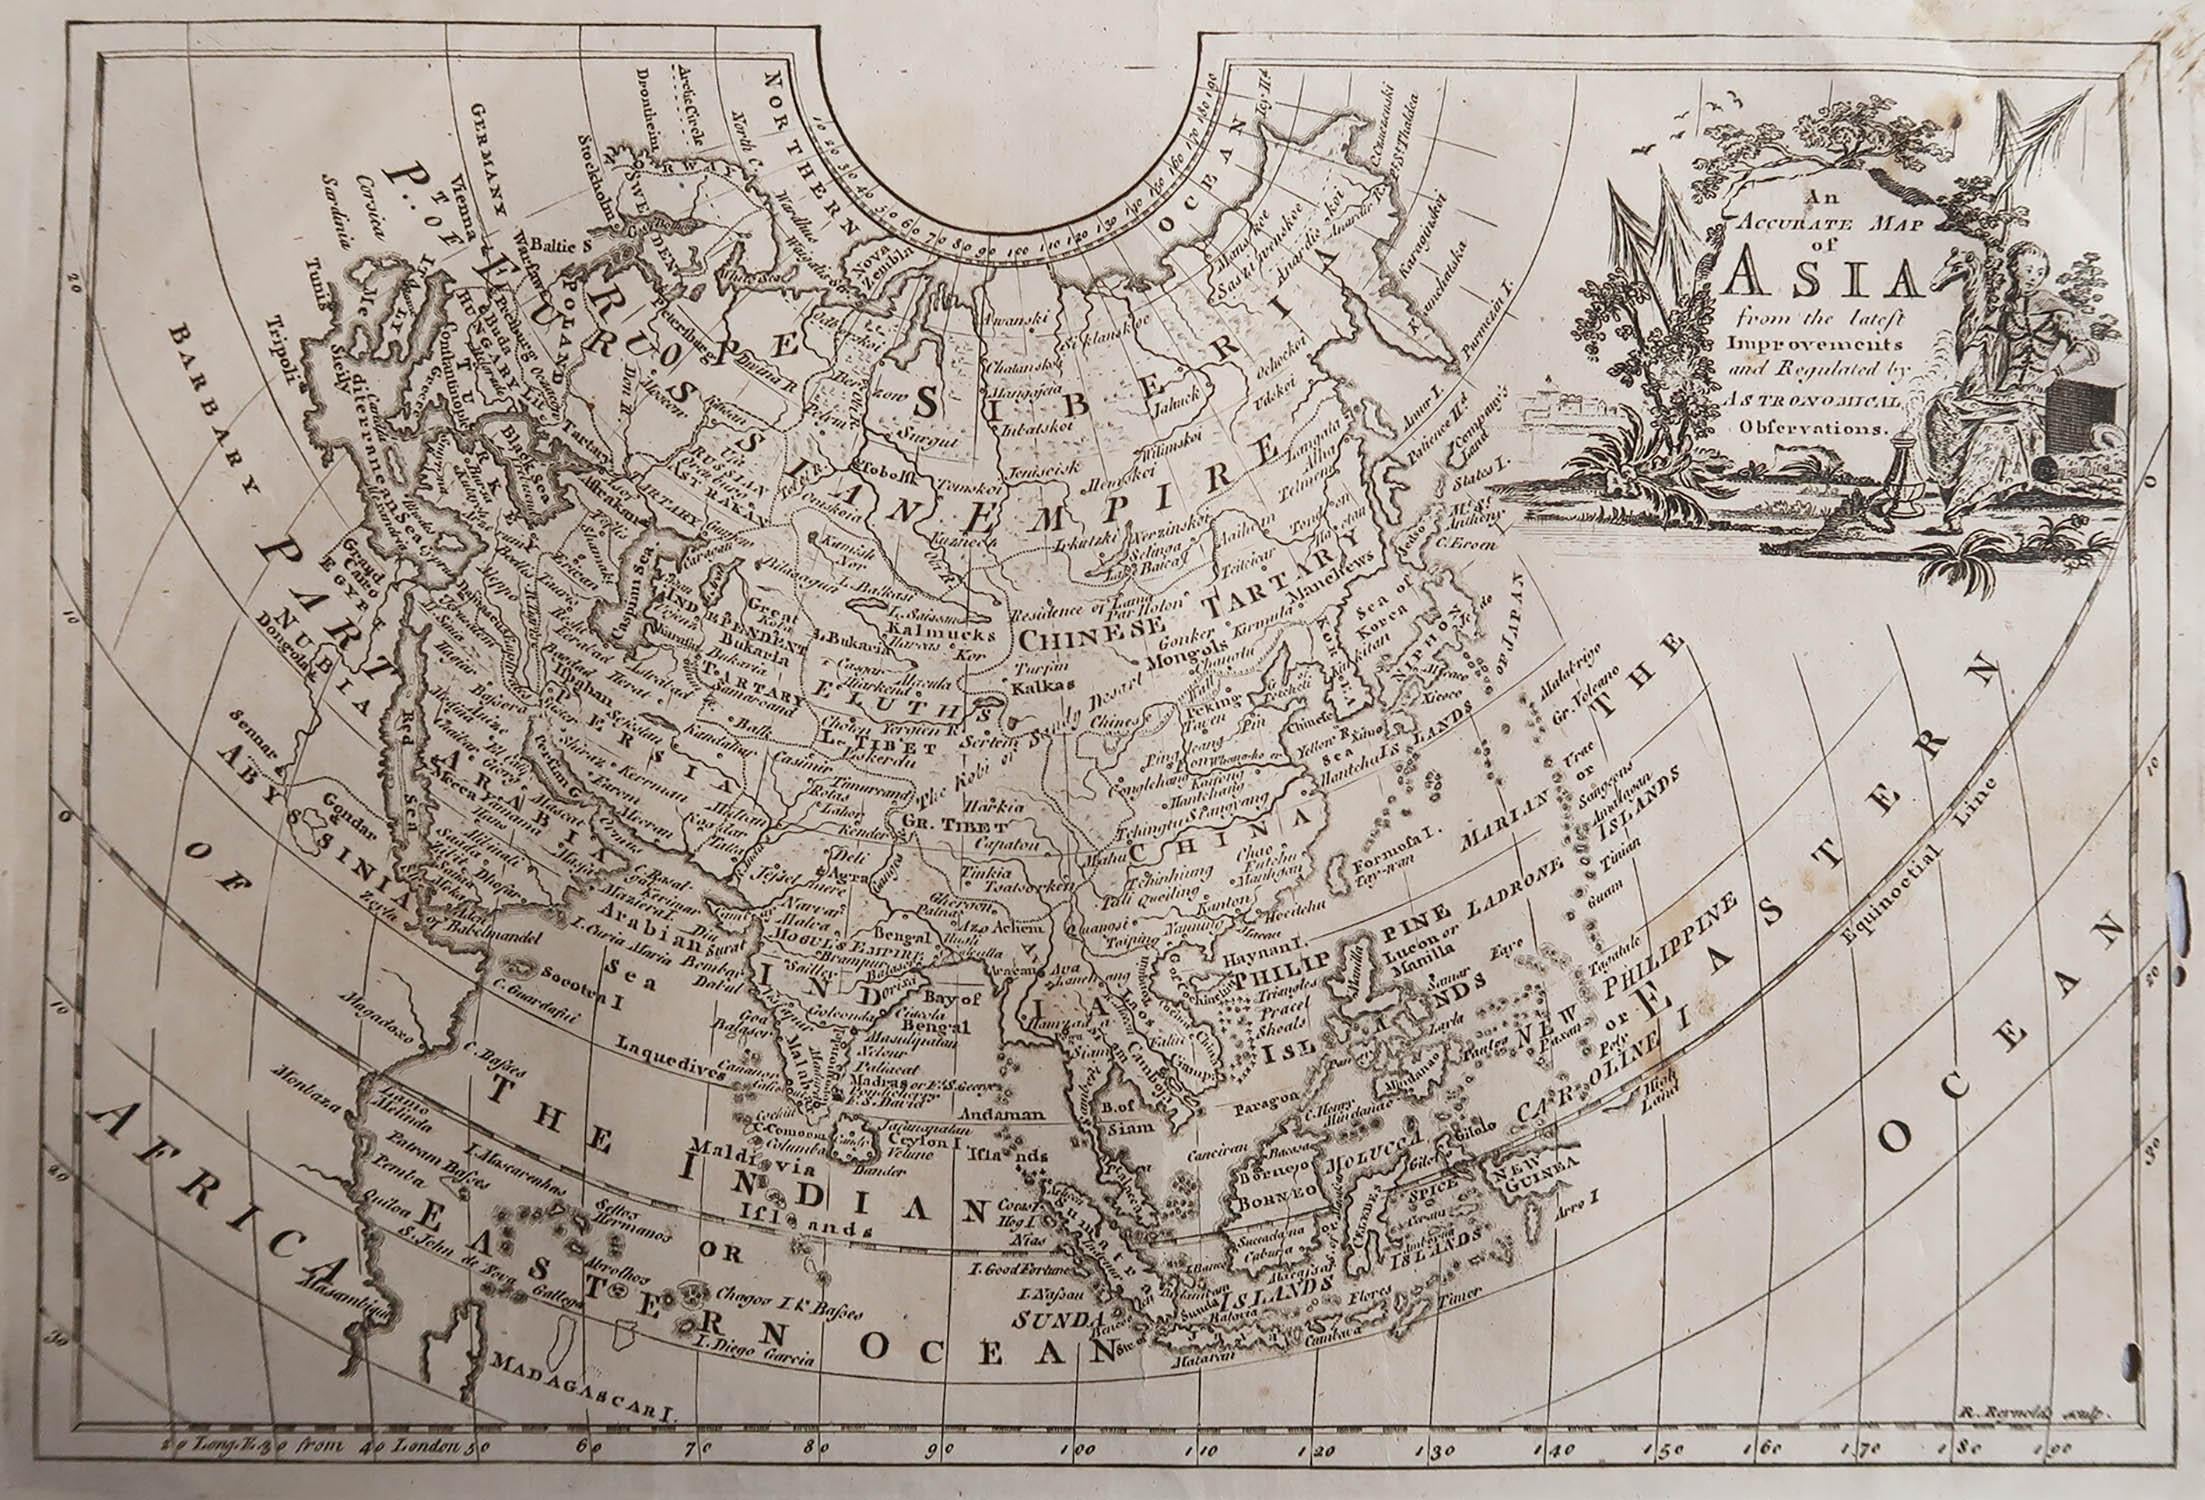 Großartige Karte von Asien

Kupferstich 

Veröffentlicht C.1780

Zwei kleine Wurmlöcher auf der rechten Seite der Karte 

Ungerahmt.